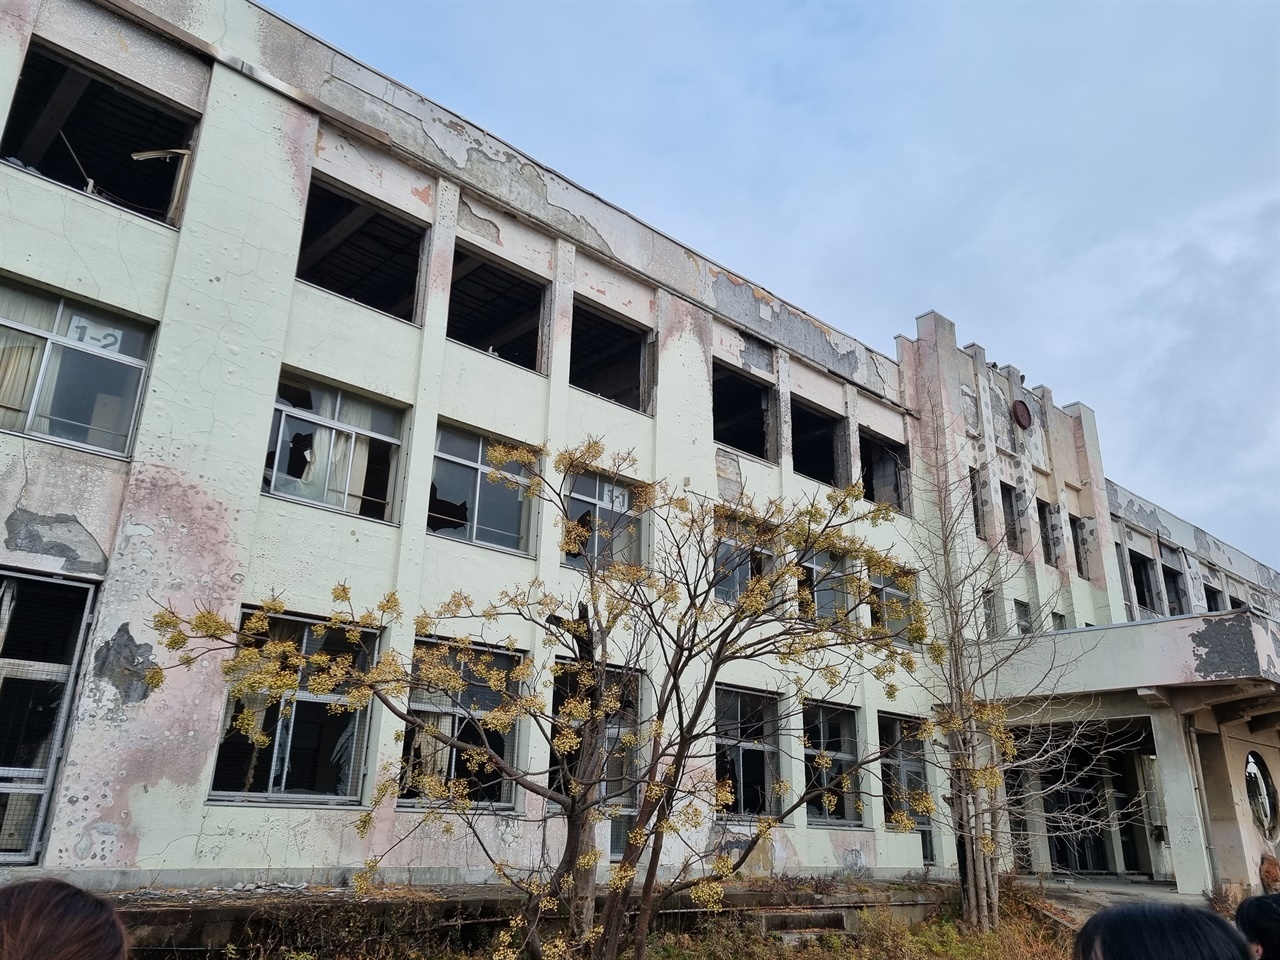 카도와키소학교의 정면 모습이다. 건물 전체가 화재로 탄 흔적이 역력하다.